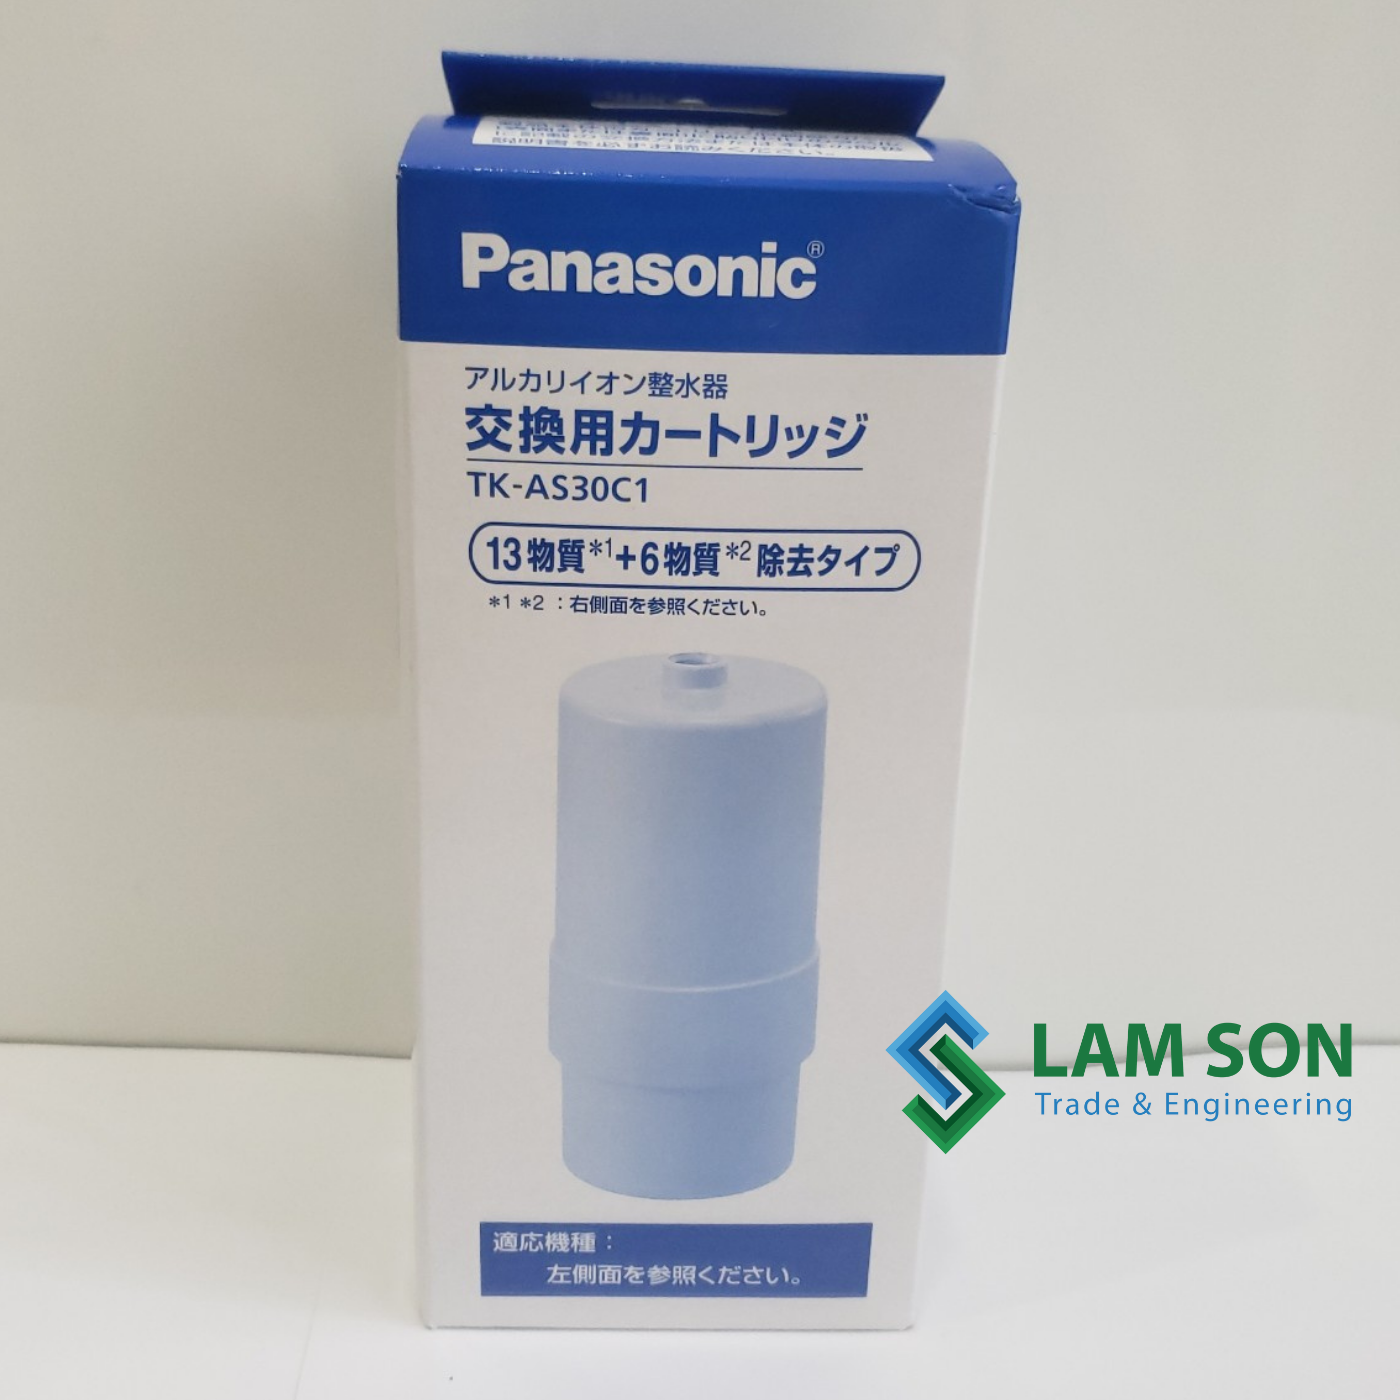 [HCM]Lõi lọc nước Panasonic 6000L.TK AS30C1[CHÍNH HÃNG]- Lõi lọc thay thế cho máy lọc Panasonic TK-AS30 TK7208 7408 8032...